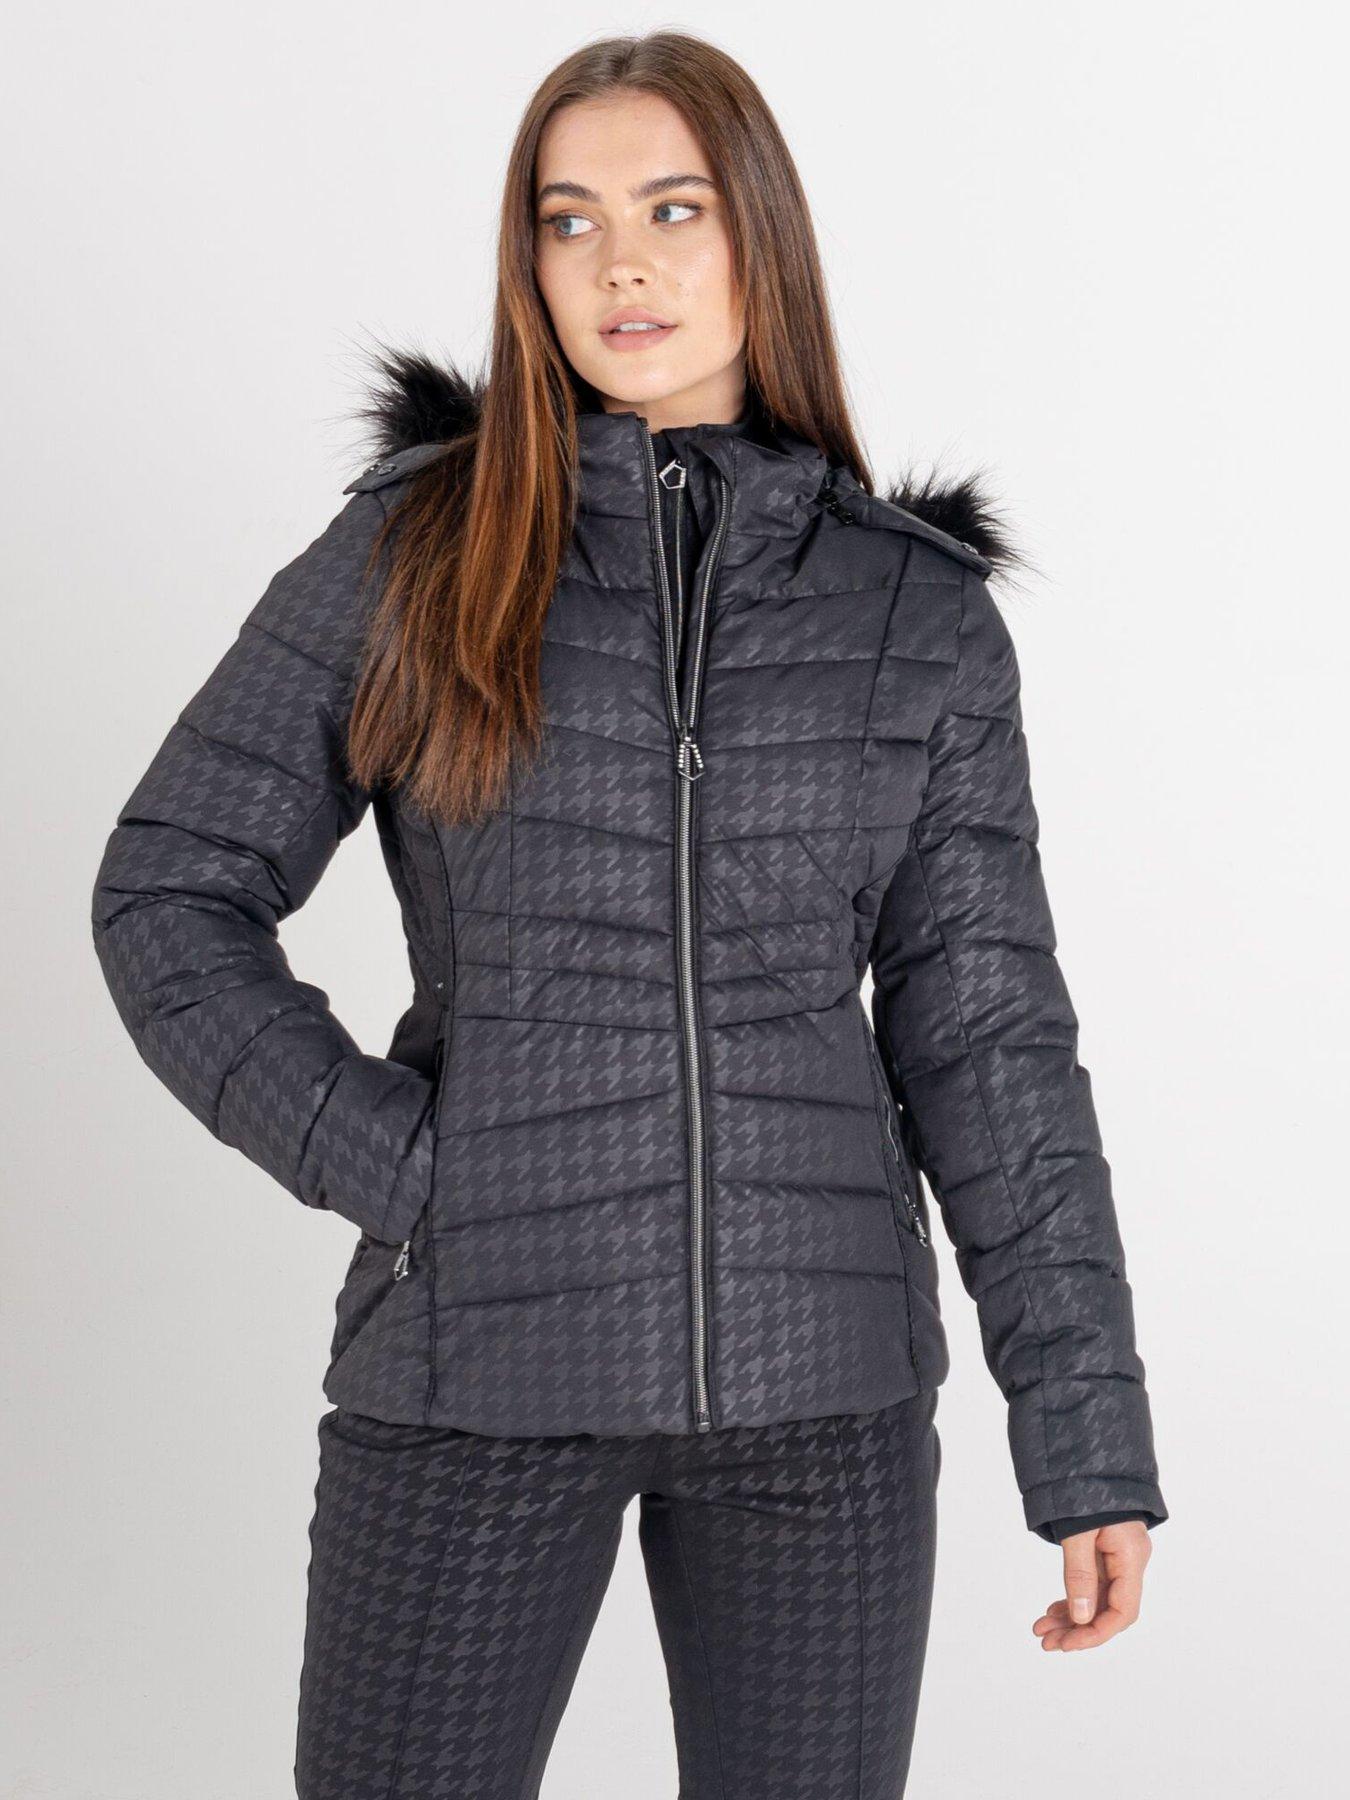 RRP £200 Brand New Men's Dare 2b "Denote" Ski Jacket Sales Sample Size M 